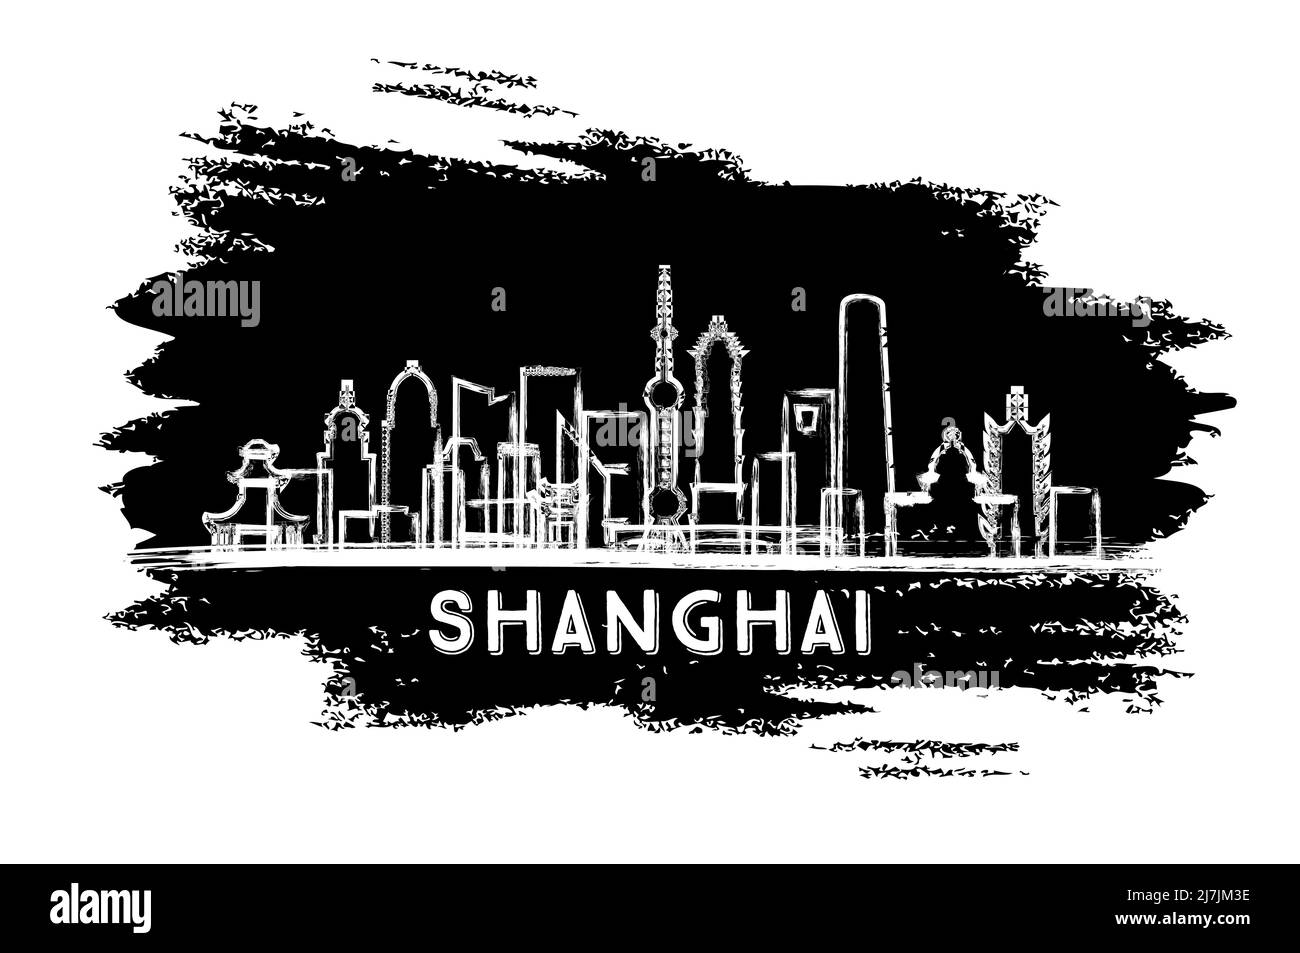 Silhouette de Shanghai China City. Esquisse dessinée à la main. Concept de voyage d'affaires et de tourisme avec architecture historique. Illustration vectorielle. Illustration de Vecteur